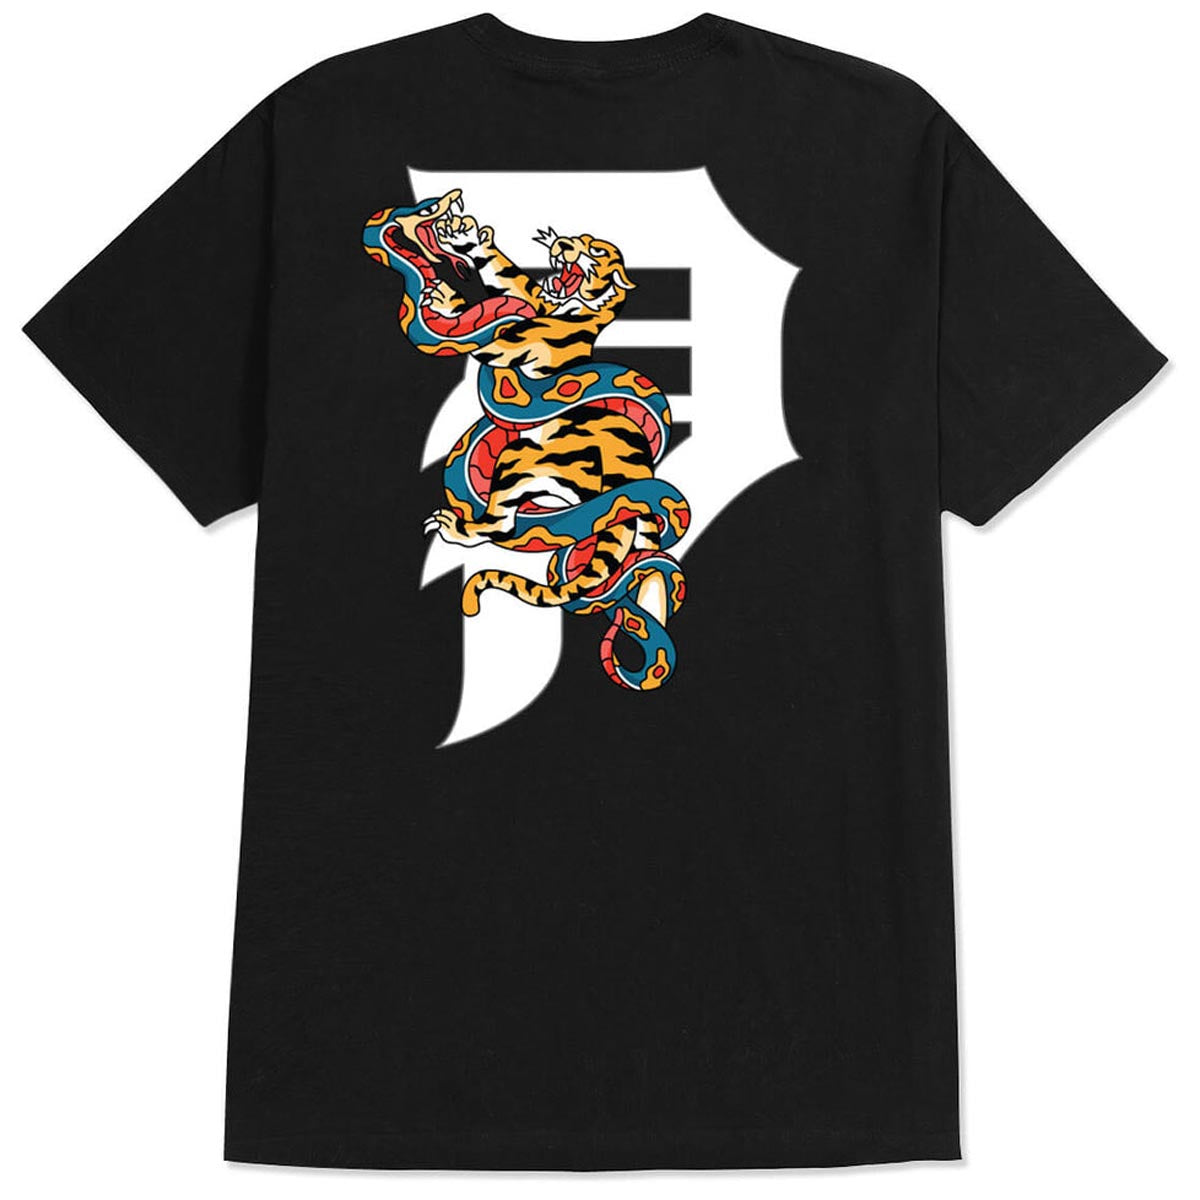 Primitive Tangle T-Shirt - Black image 1